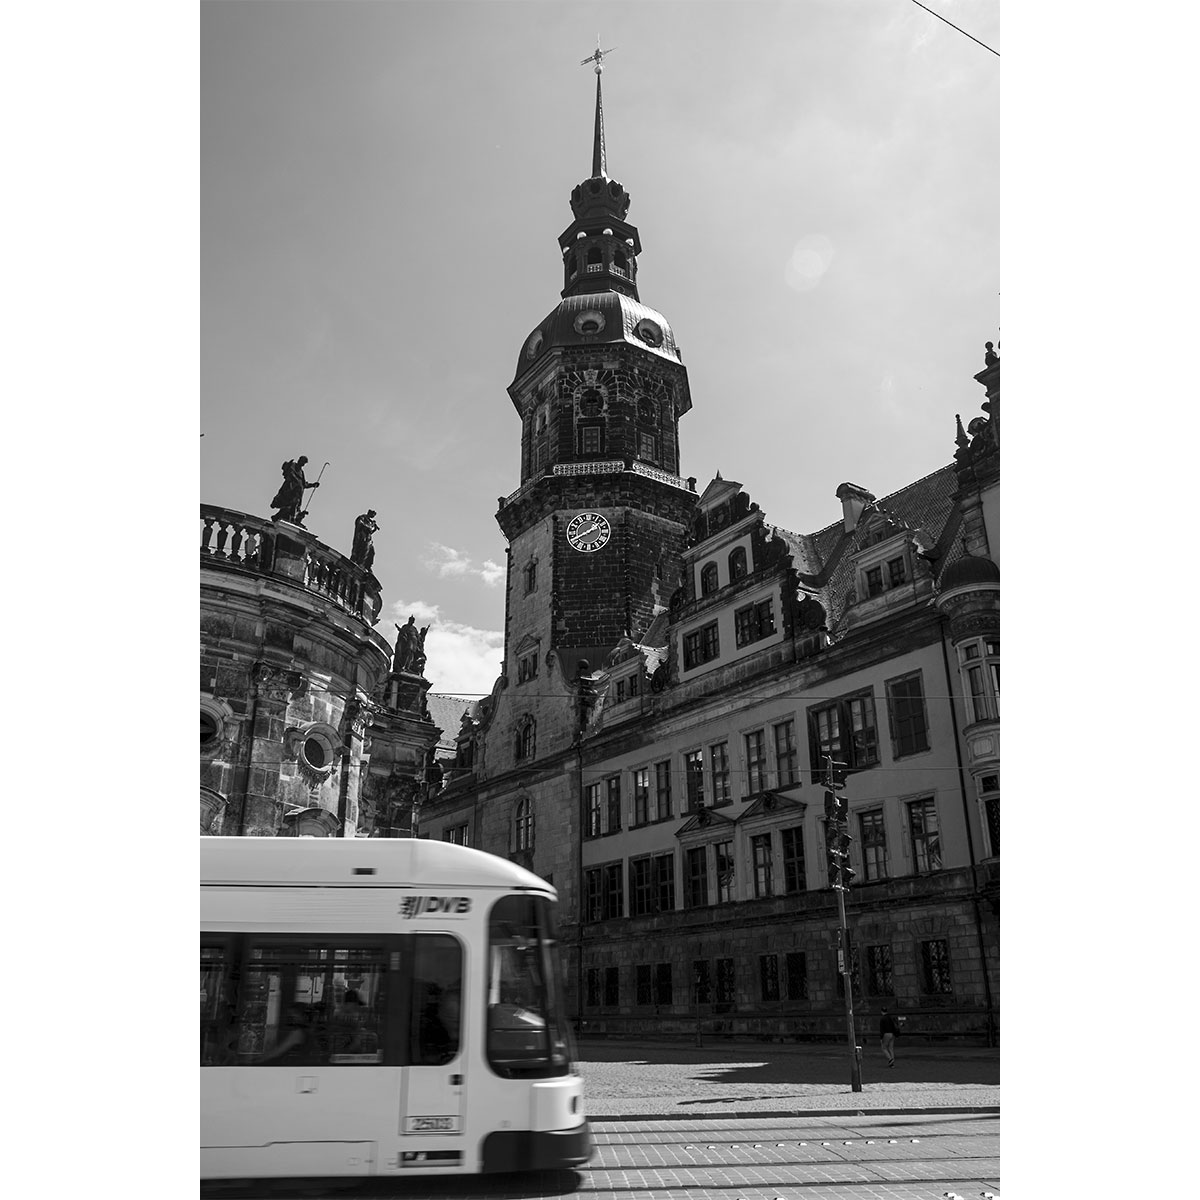 Das Residenzschloss in Dresden